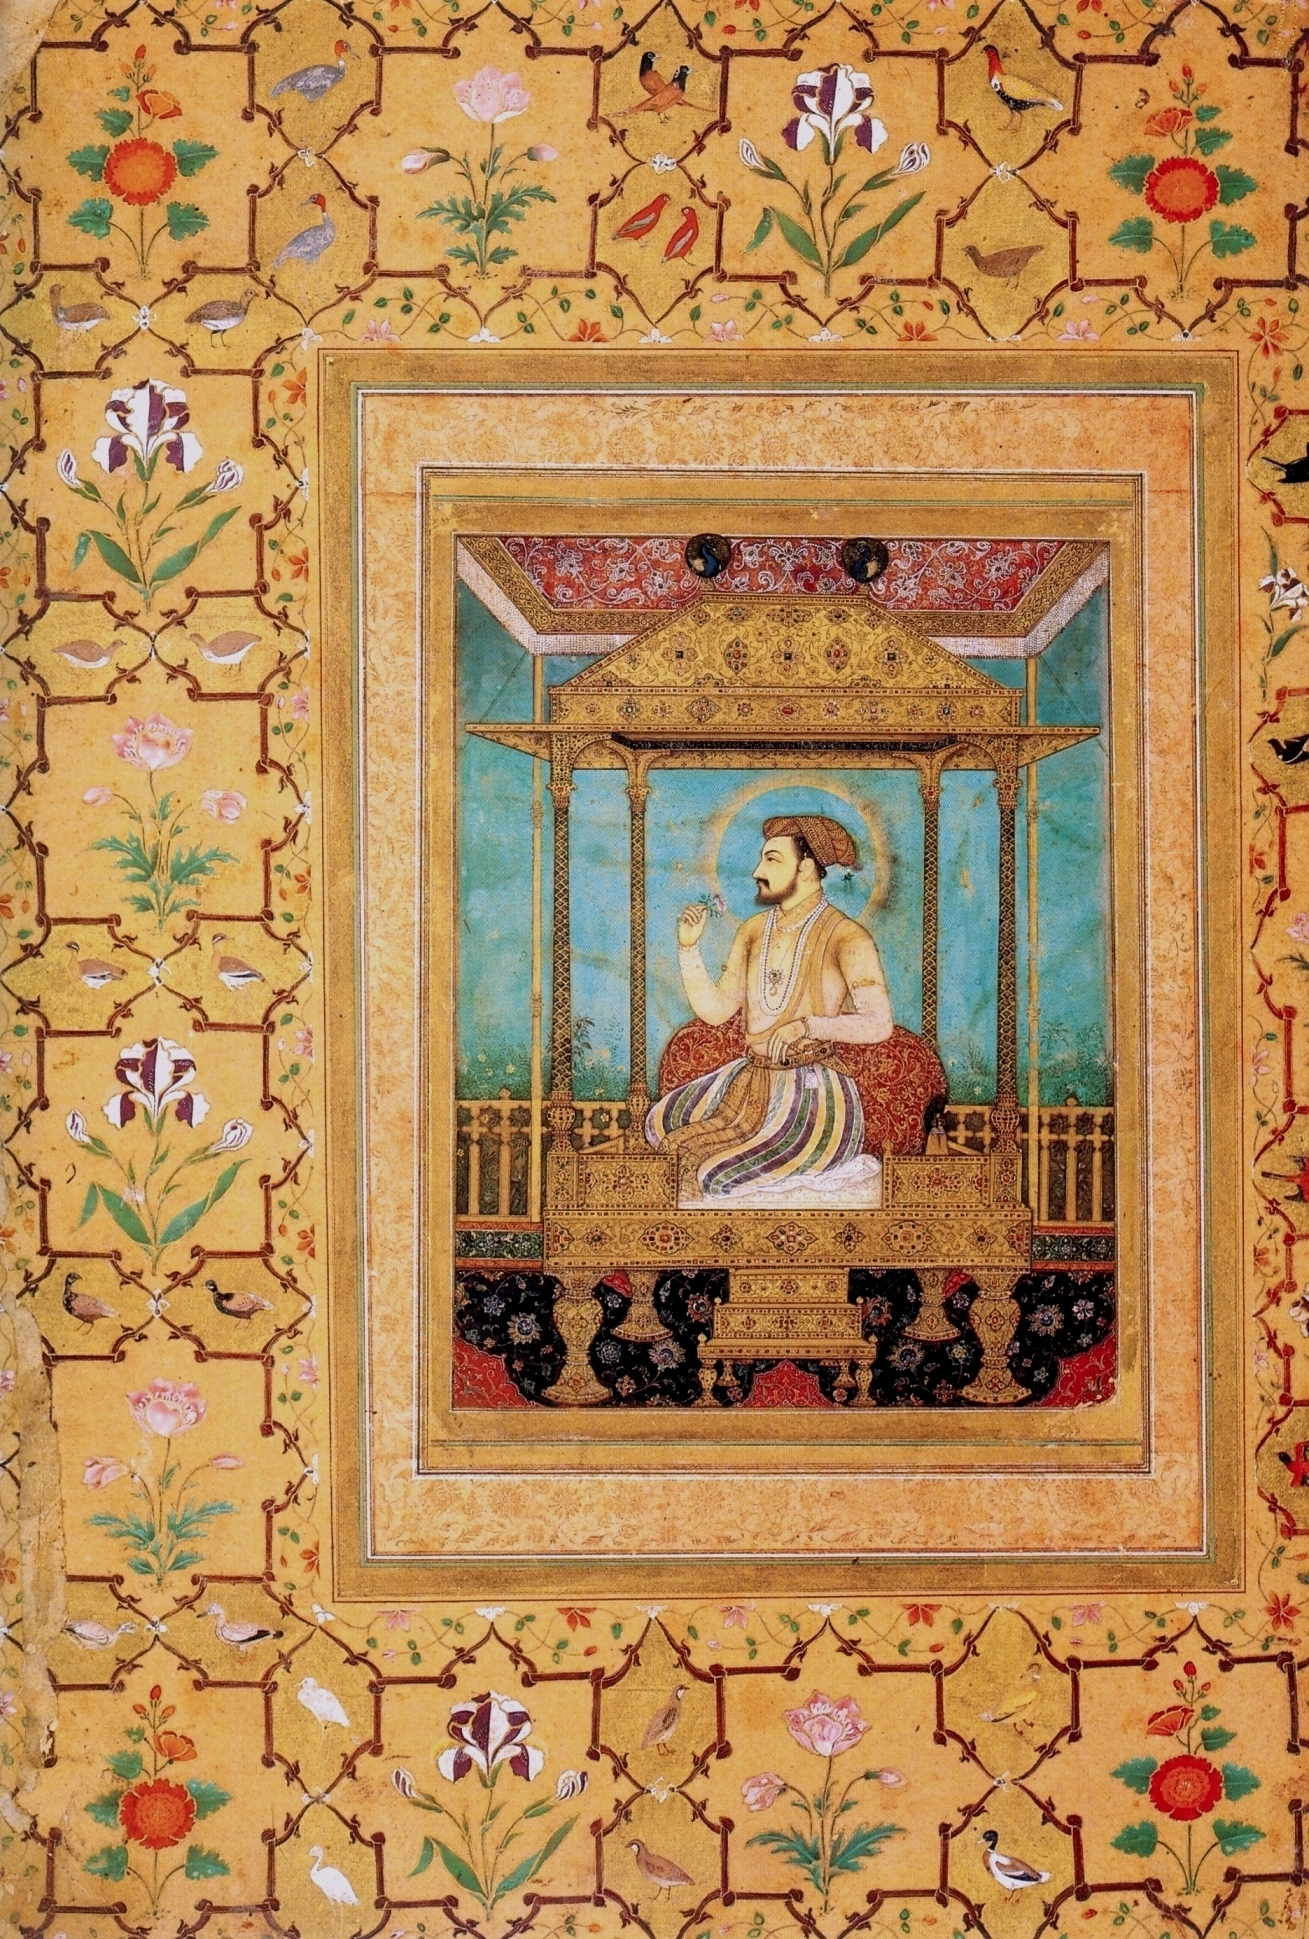  मयूर सिंहासन पर शाहजहाँ: गोवर्धन  by  Govardhan - 1635 - 16,5 x 12.7 cm 